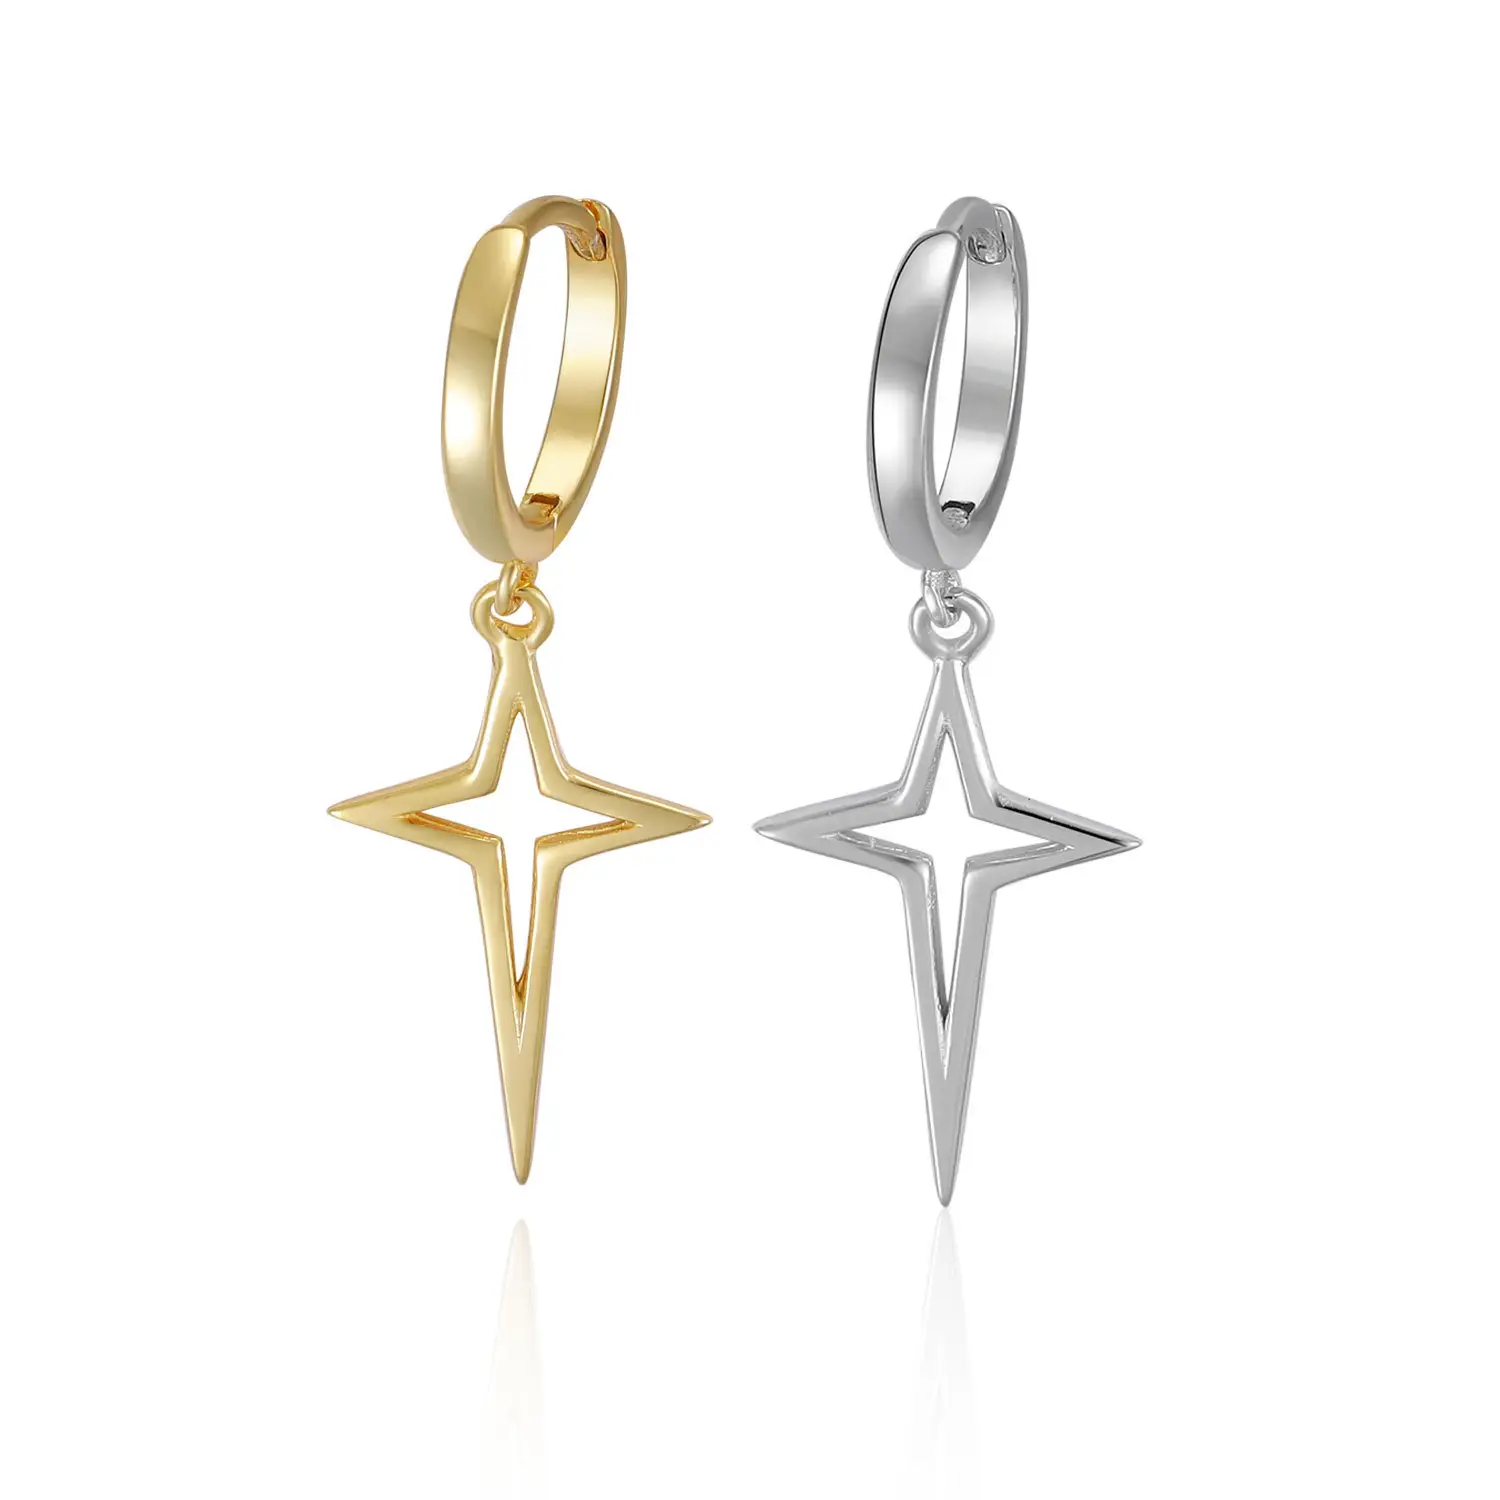 New Arrival Wholesale 925 Sterling Silver Star Huggies Hoops Cross Fashion Jewelry Earrings